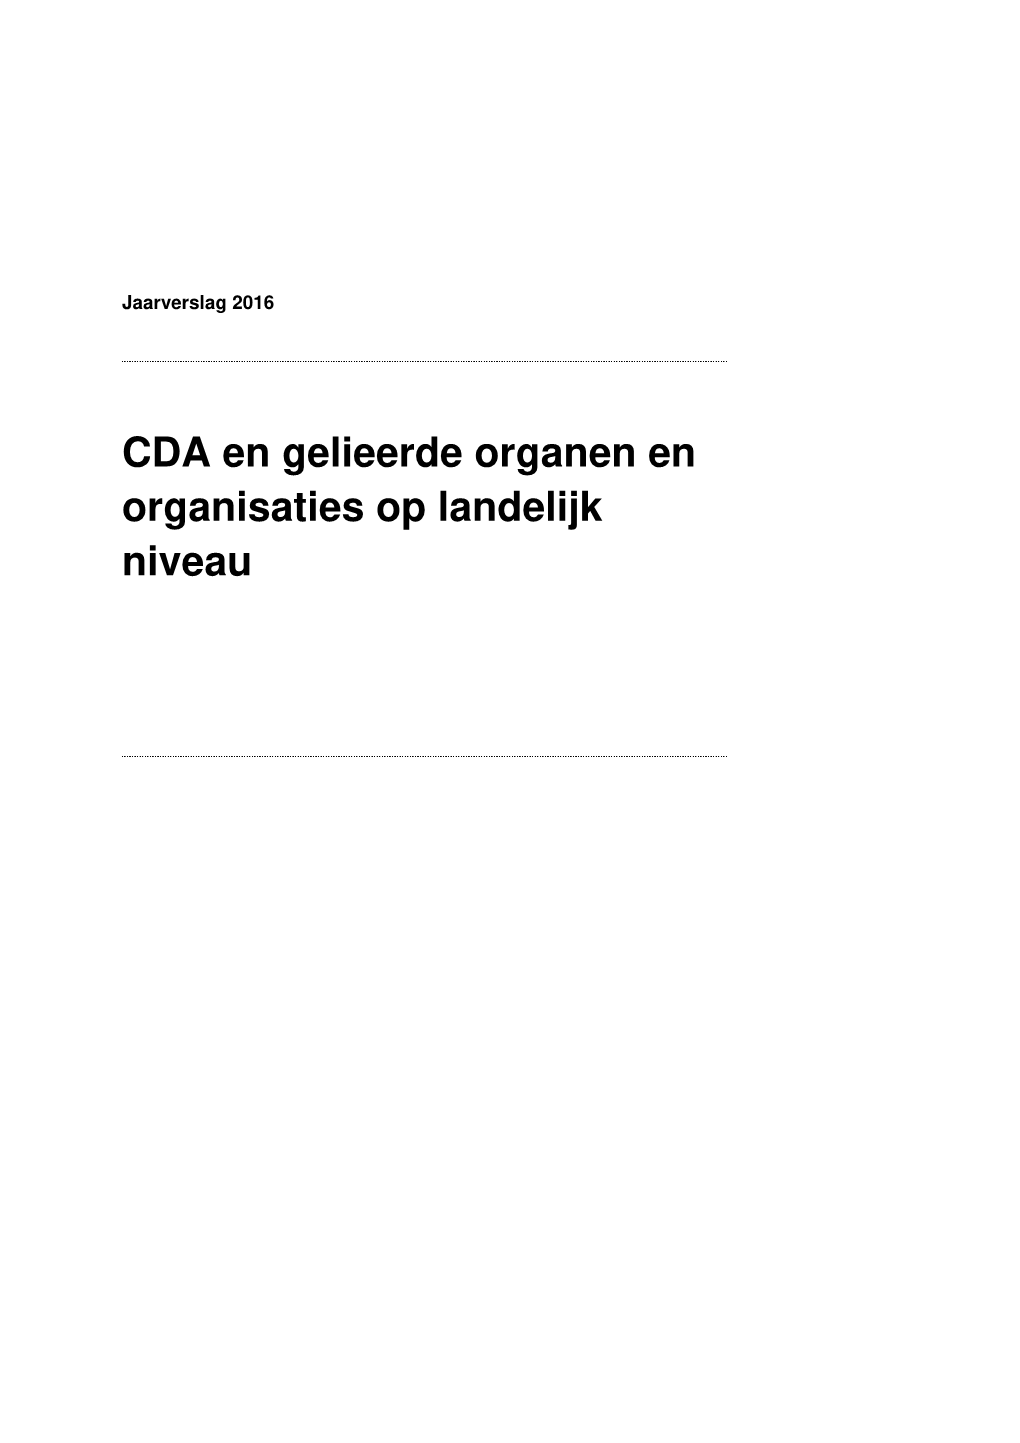 CDA En Gelieerde Organen En Organisaties Op Landelijk Niveau